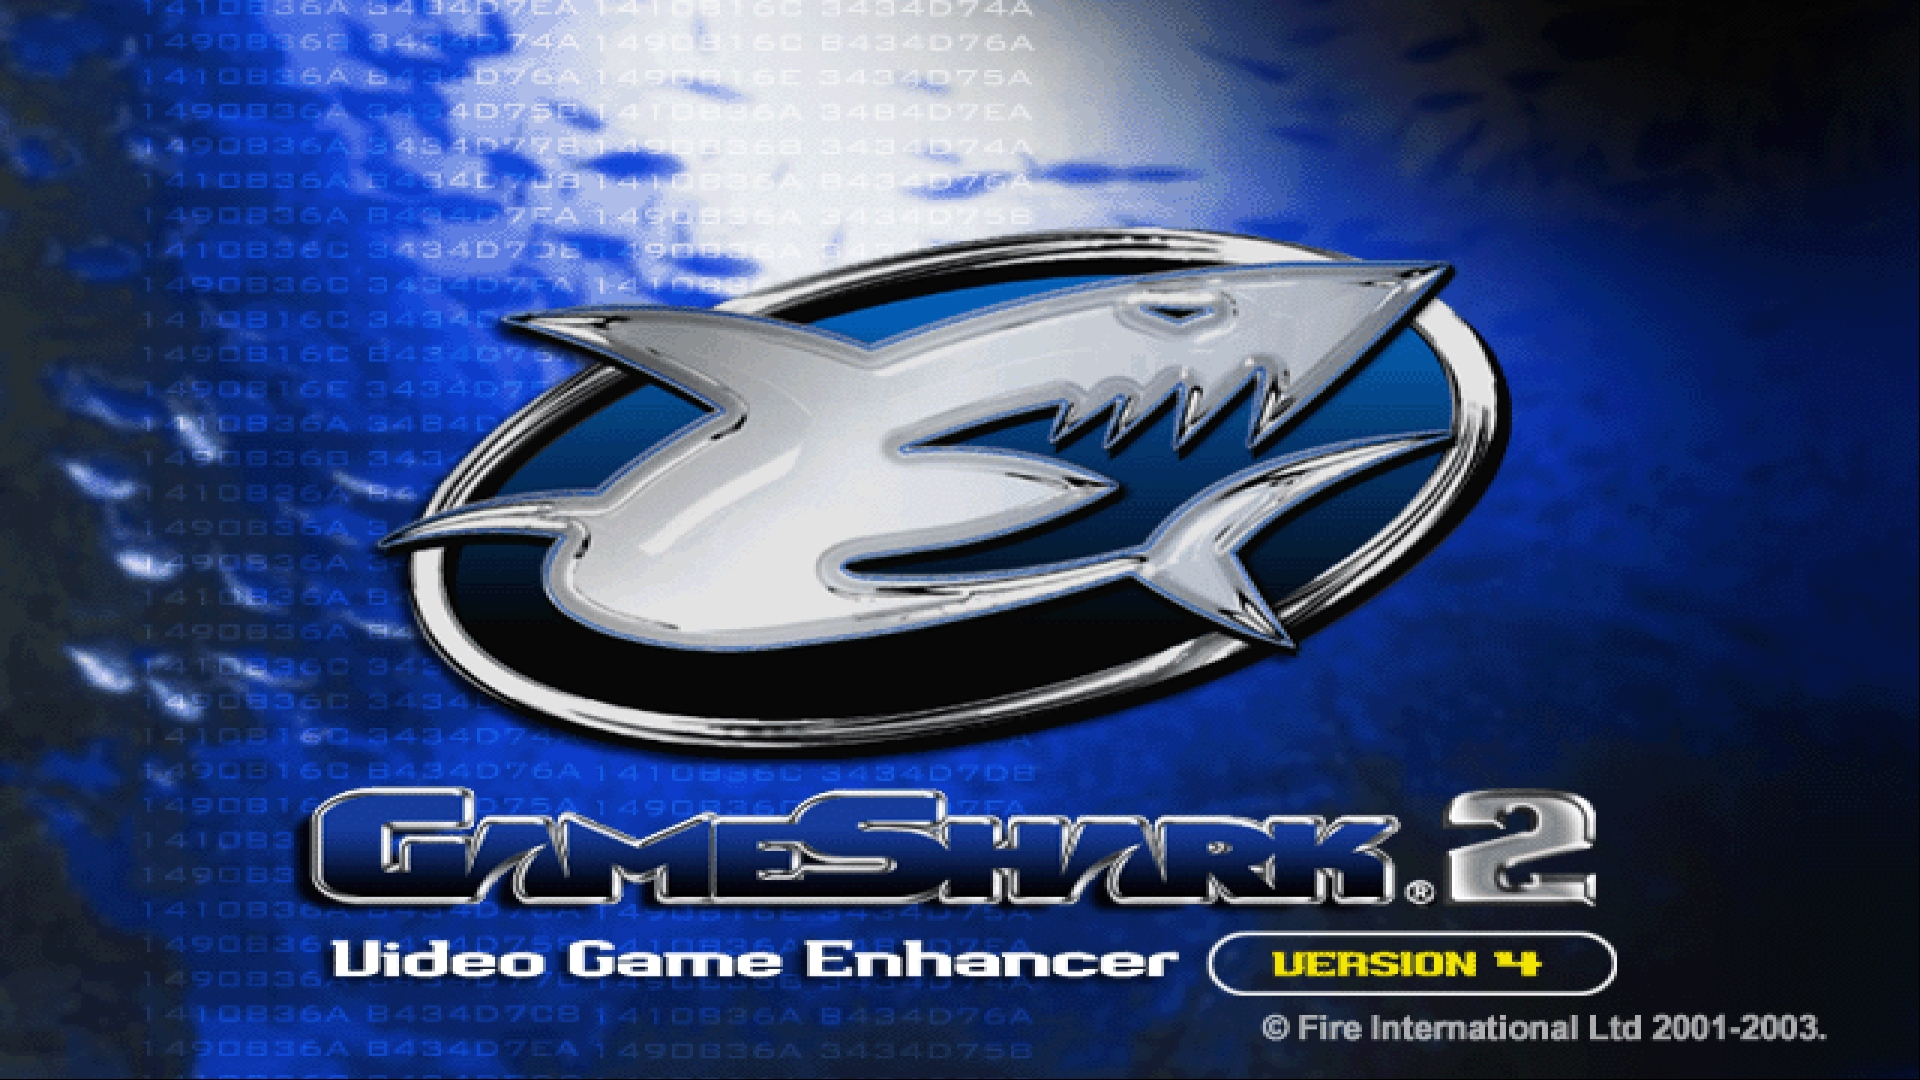 GameShark Version 4.0 ROM & ISO